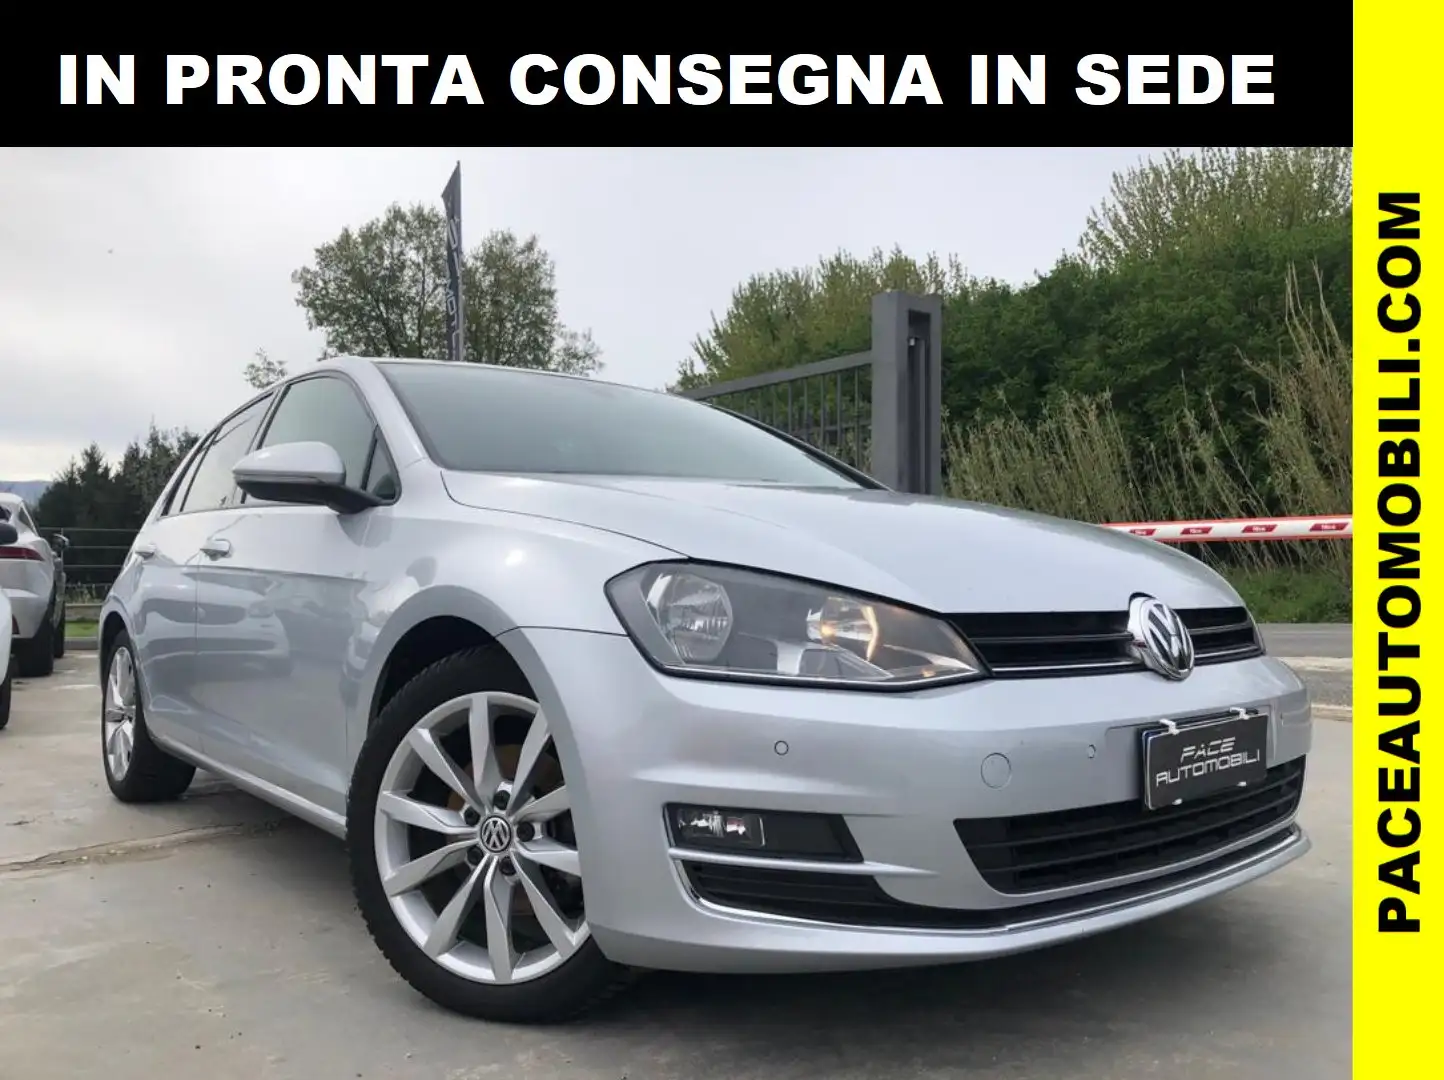 usato Volkswagen Golf Berlina a Artena – Roma per € 11.400,-